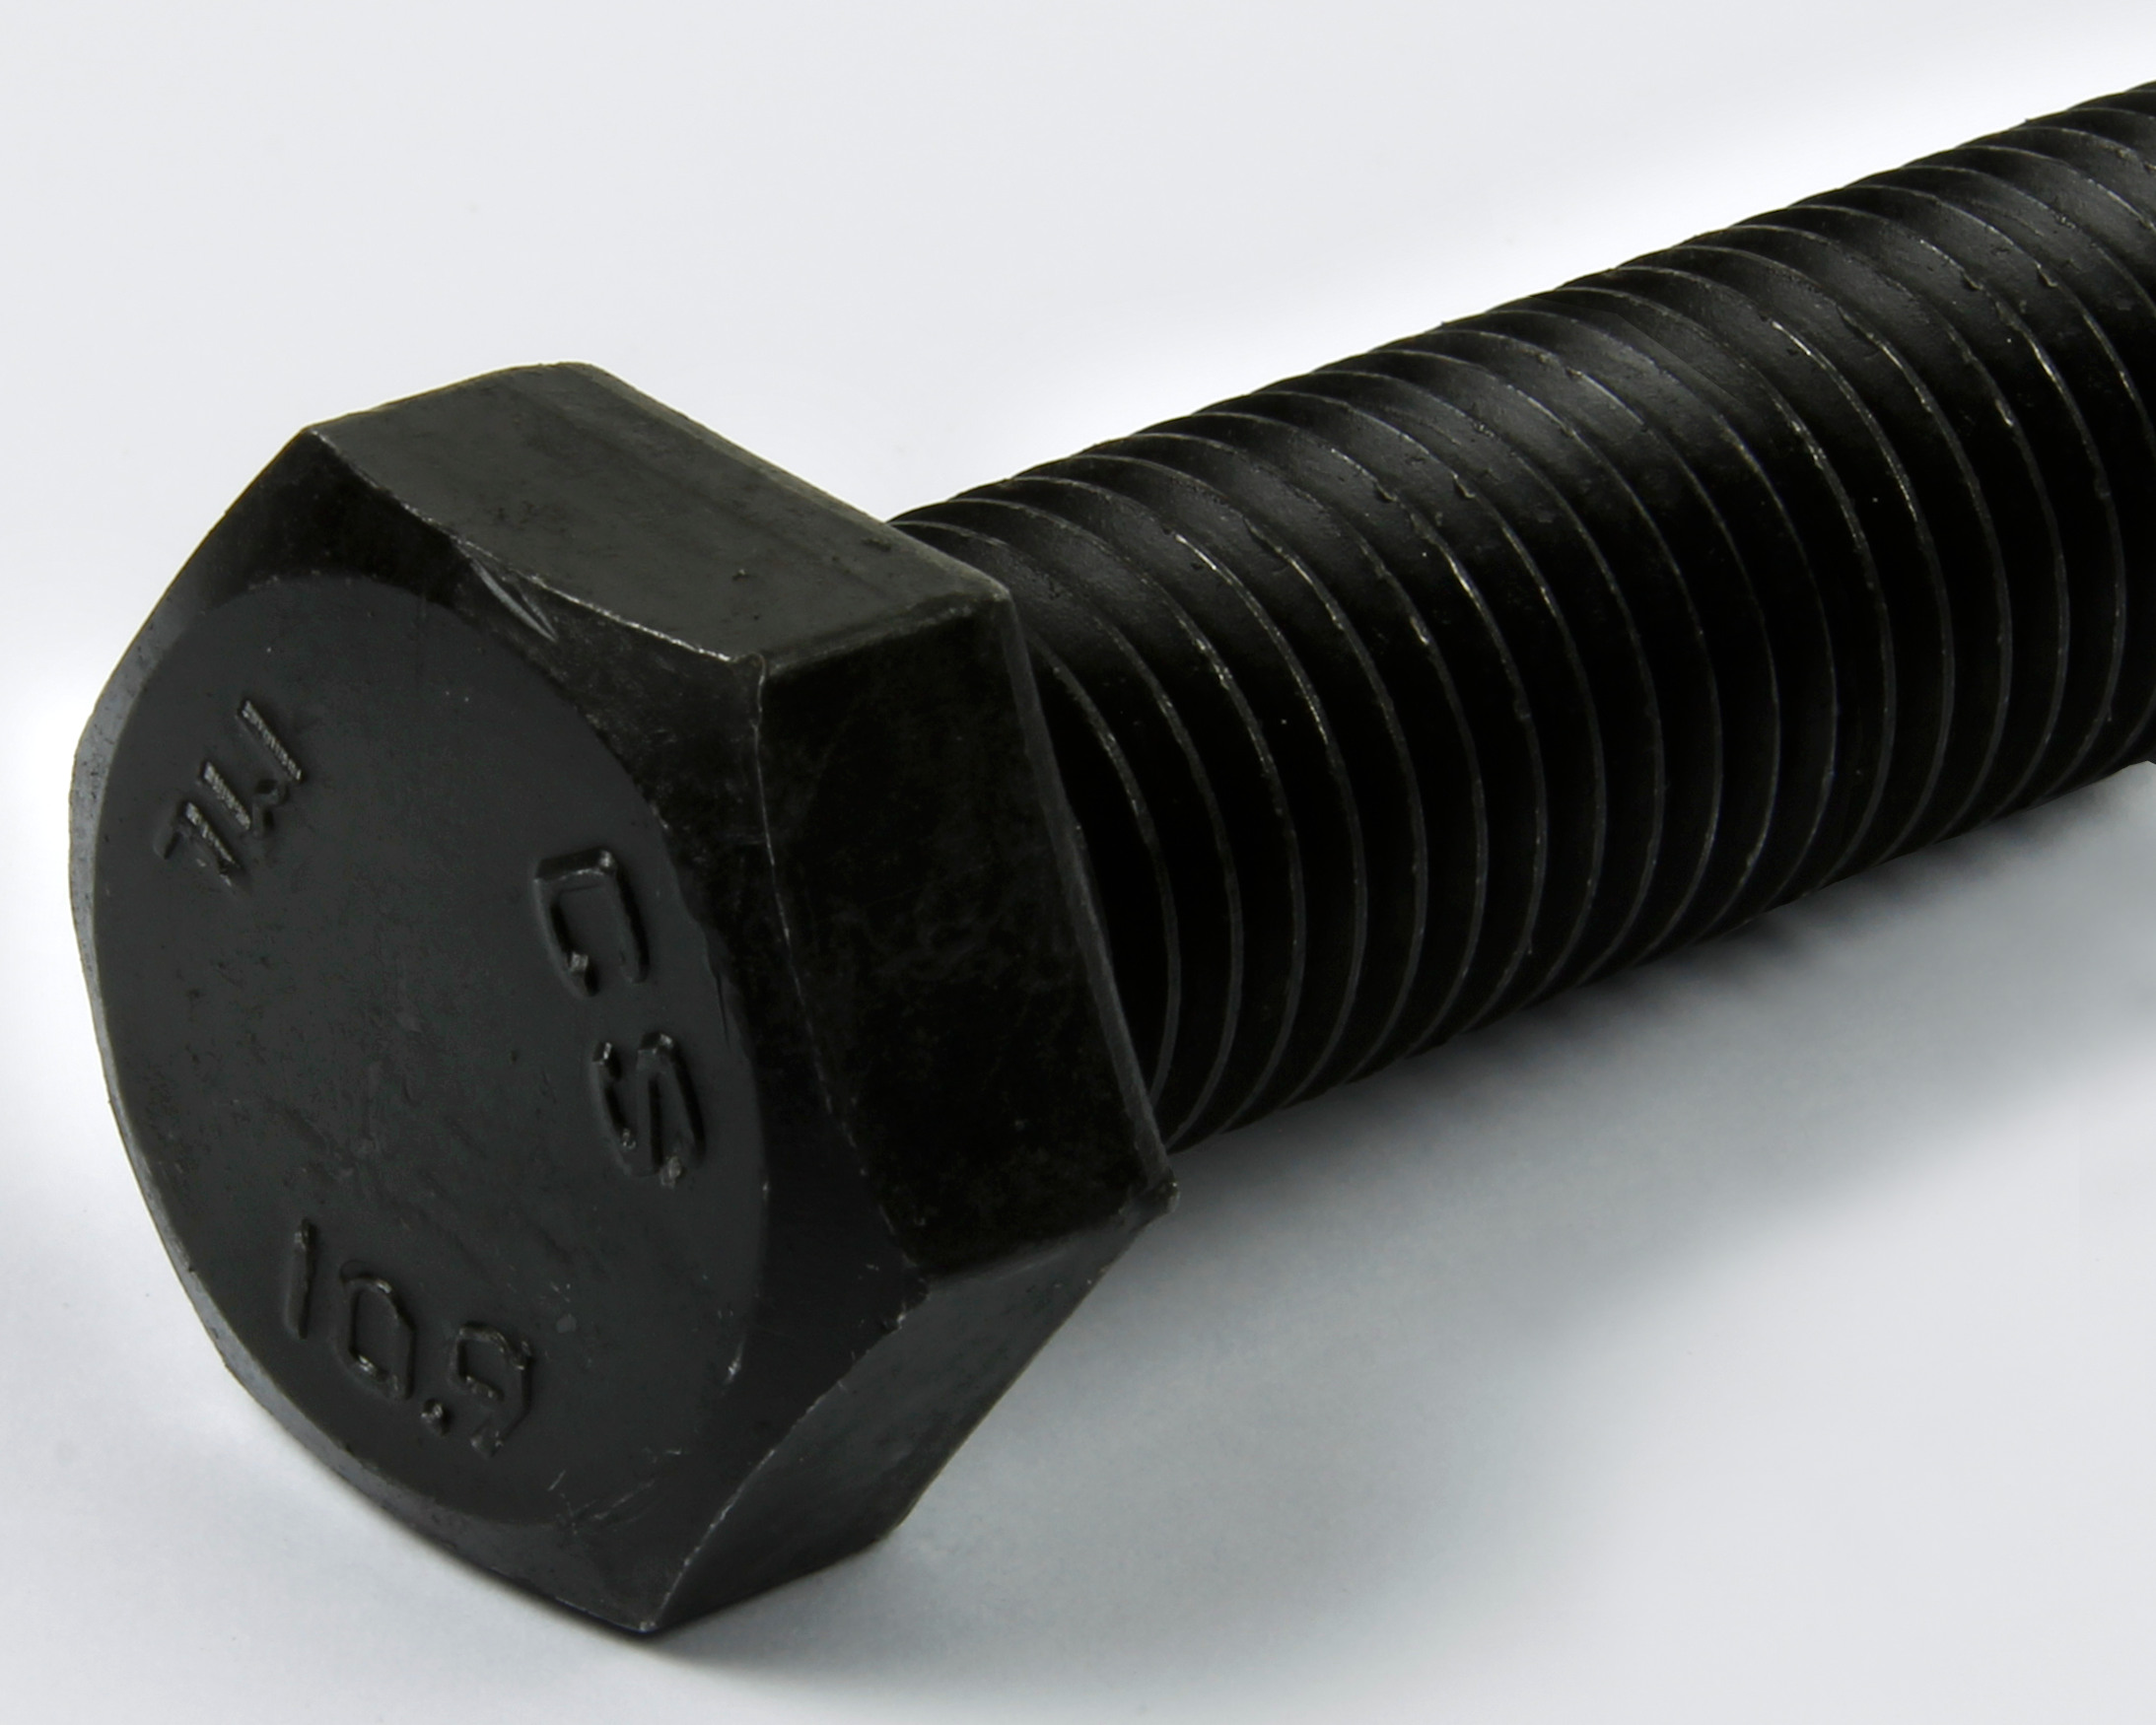 Black oxide coated steel bolt